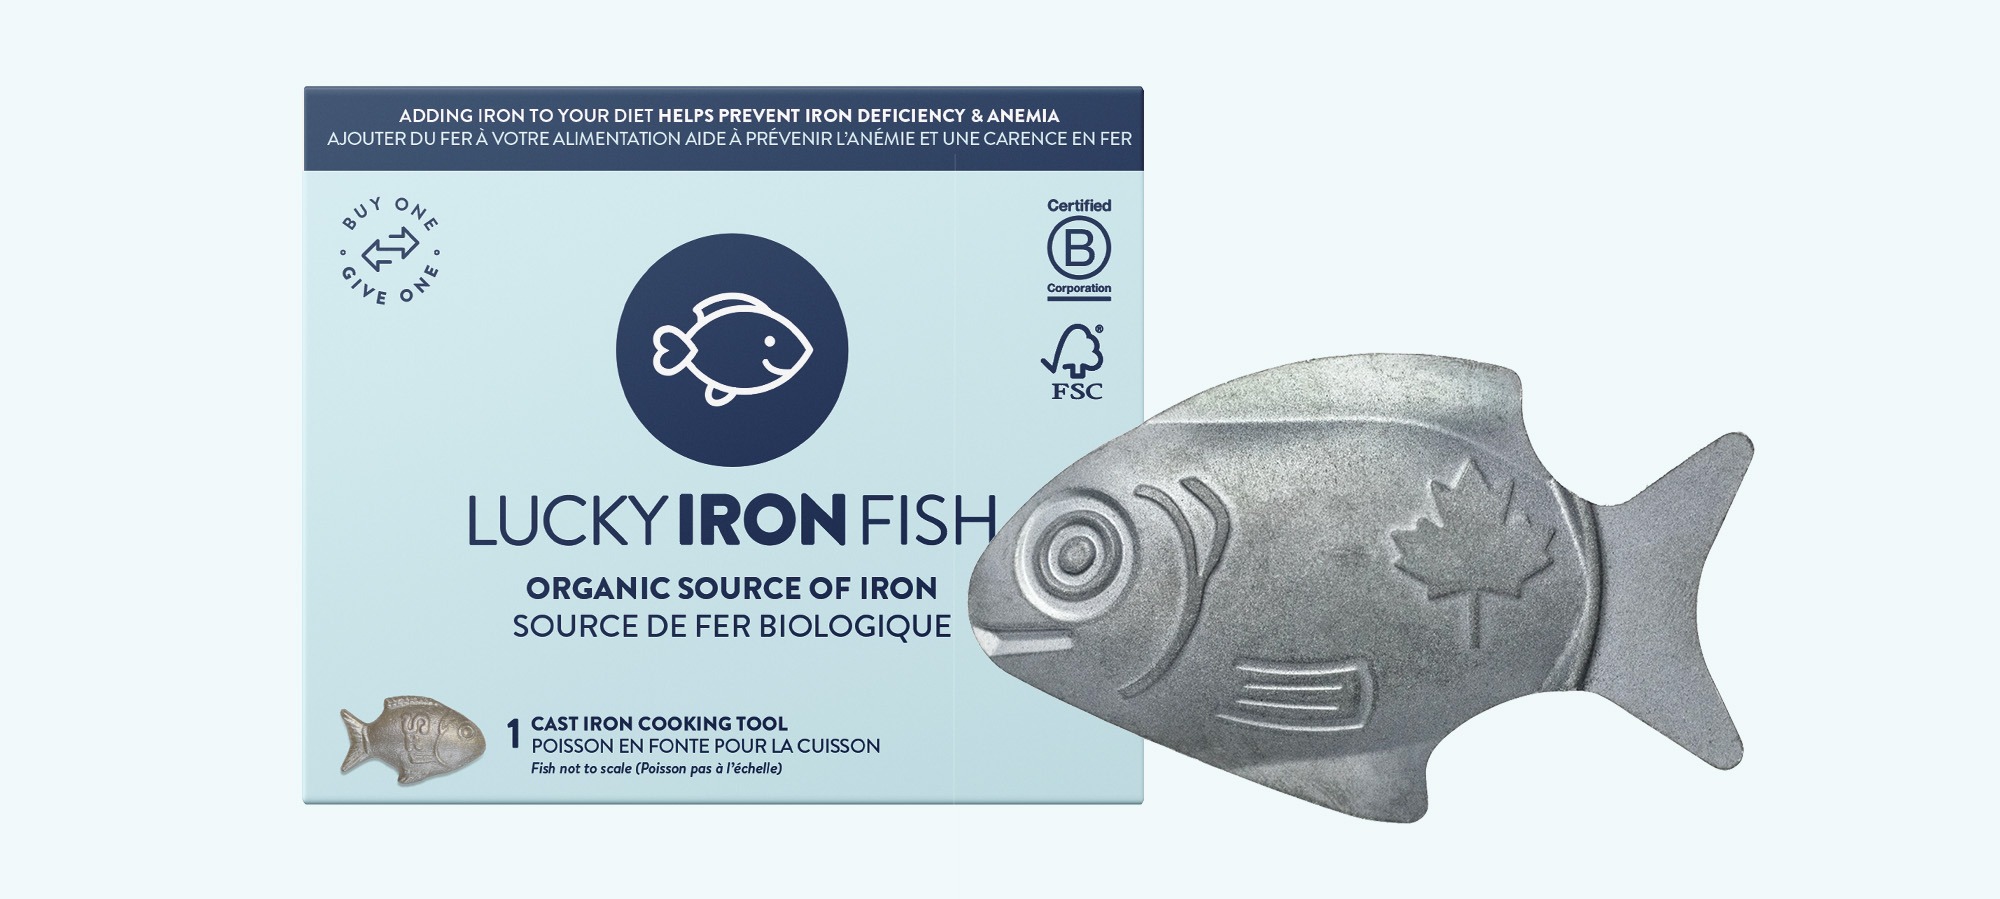 https://zestybrands.ca/wp-content/uploads/2022/10/branding-vancouver-Lucky-iron-fish-package-design-zesty-brands.jpg